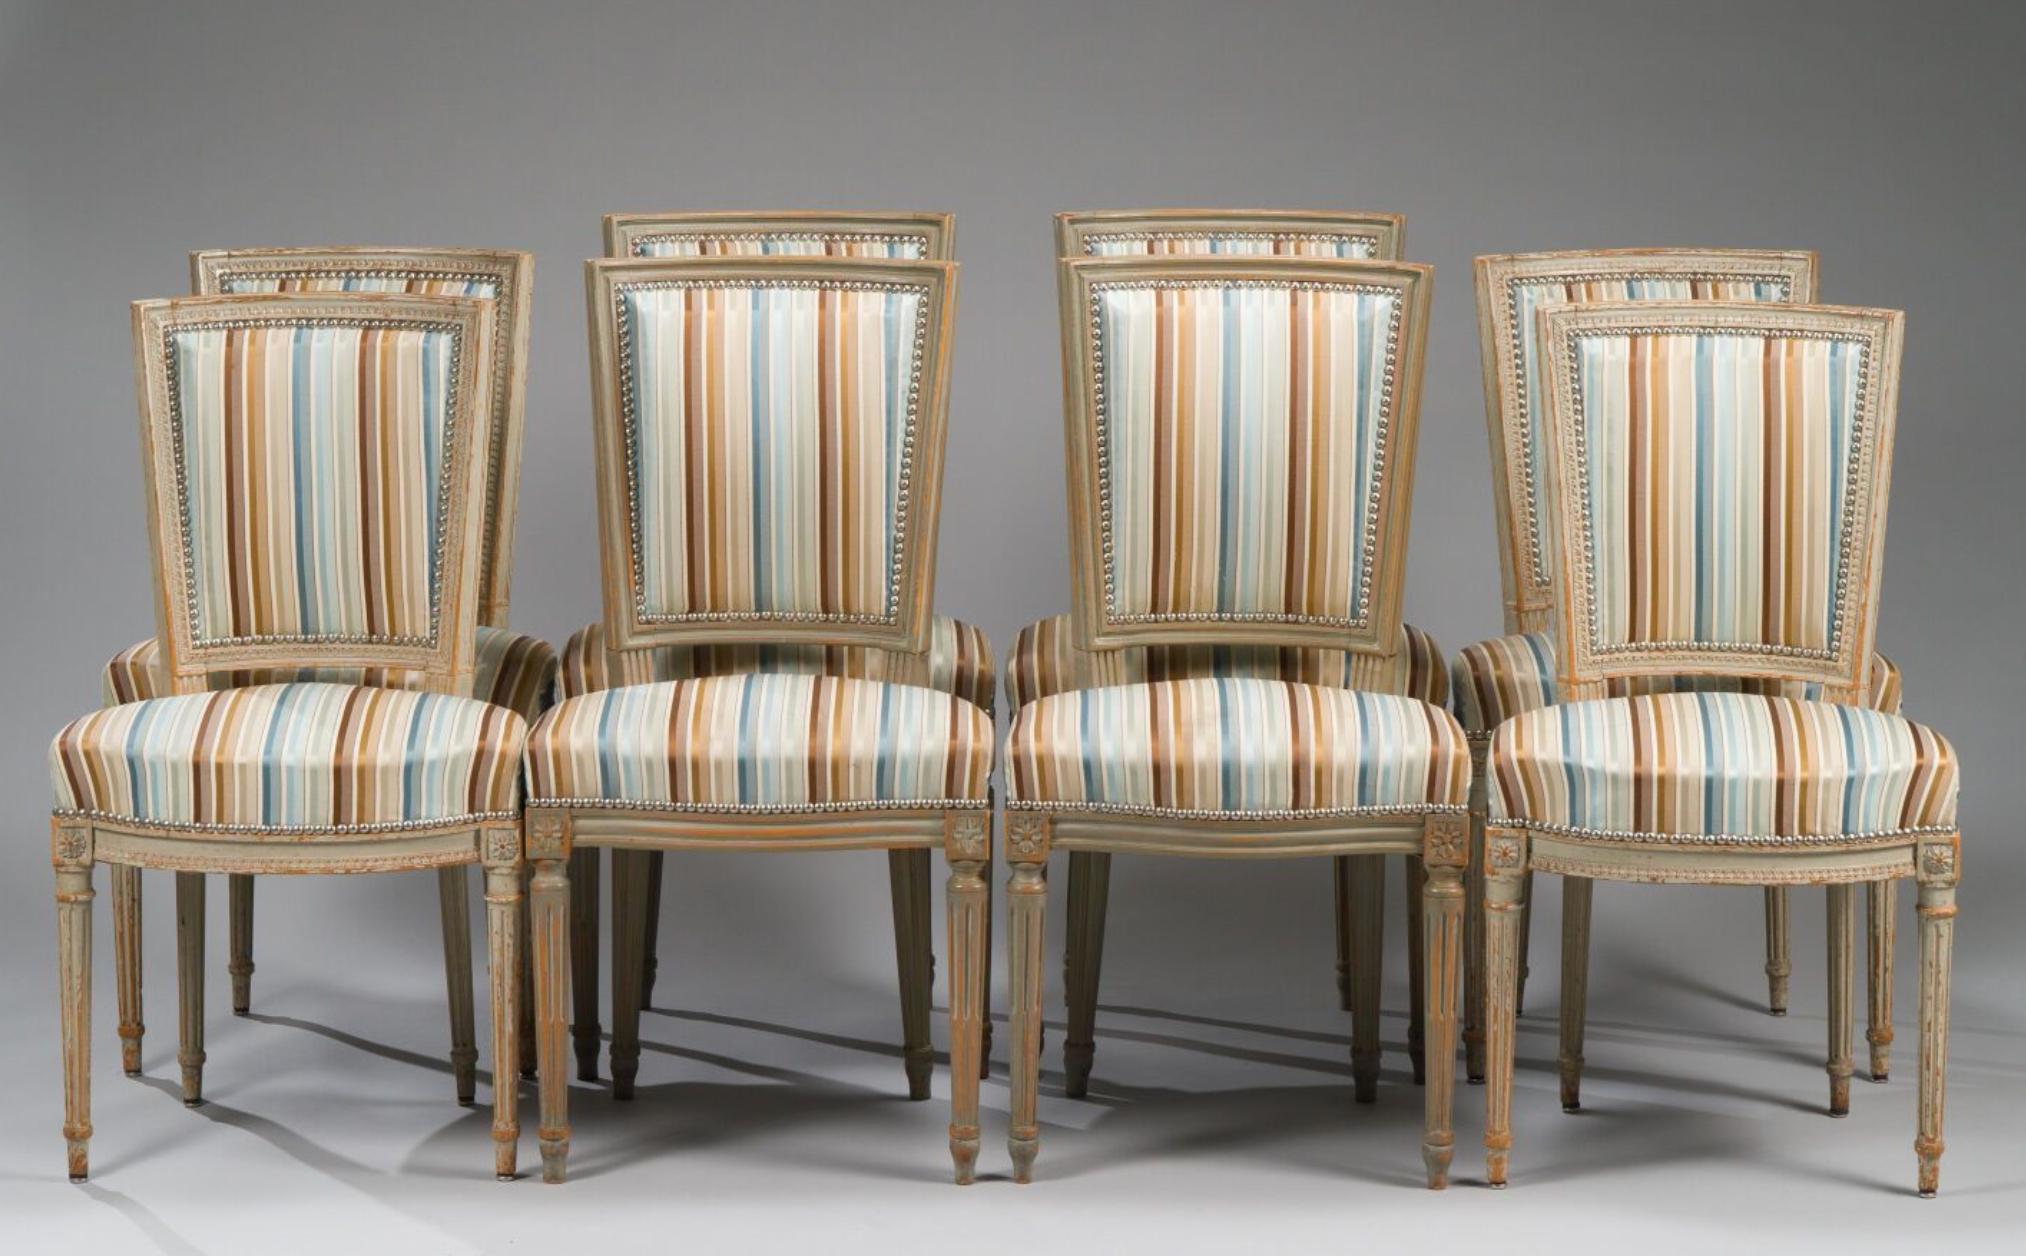 Chaises de salle à manger de style Louis XVI, sculptées à la main, du 19e siècle. Toutes les chaises sont en très bon état authentique et portent encore leur revêtement de soie d'origine.
France, vers 1880